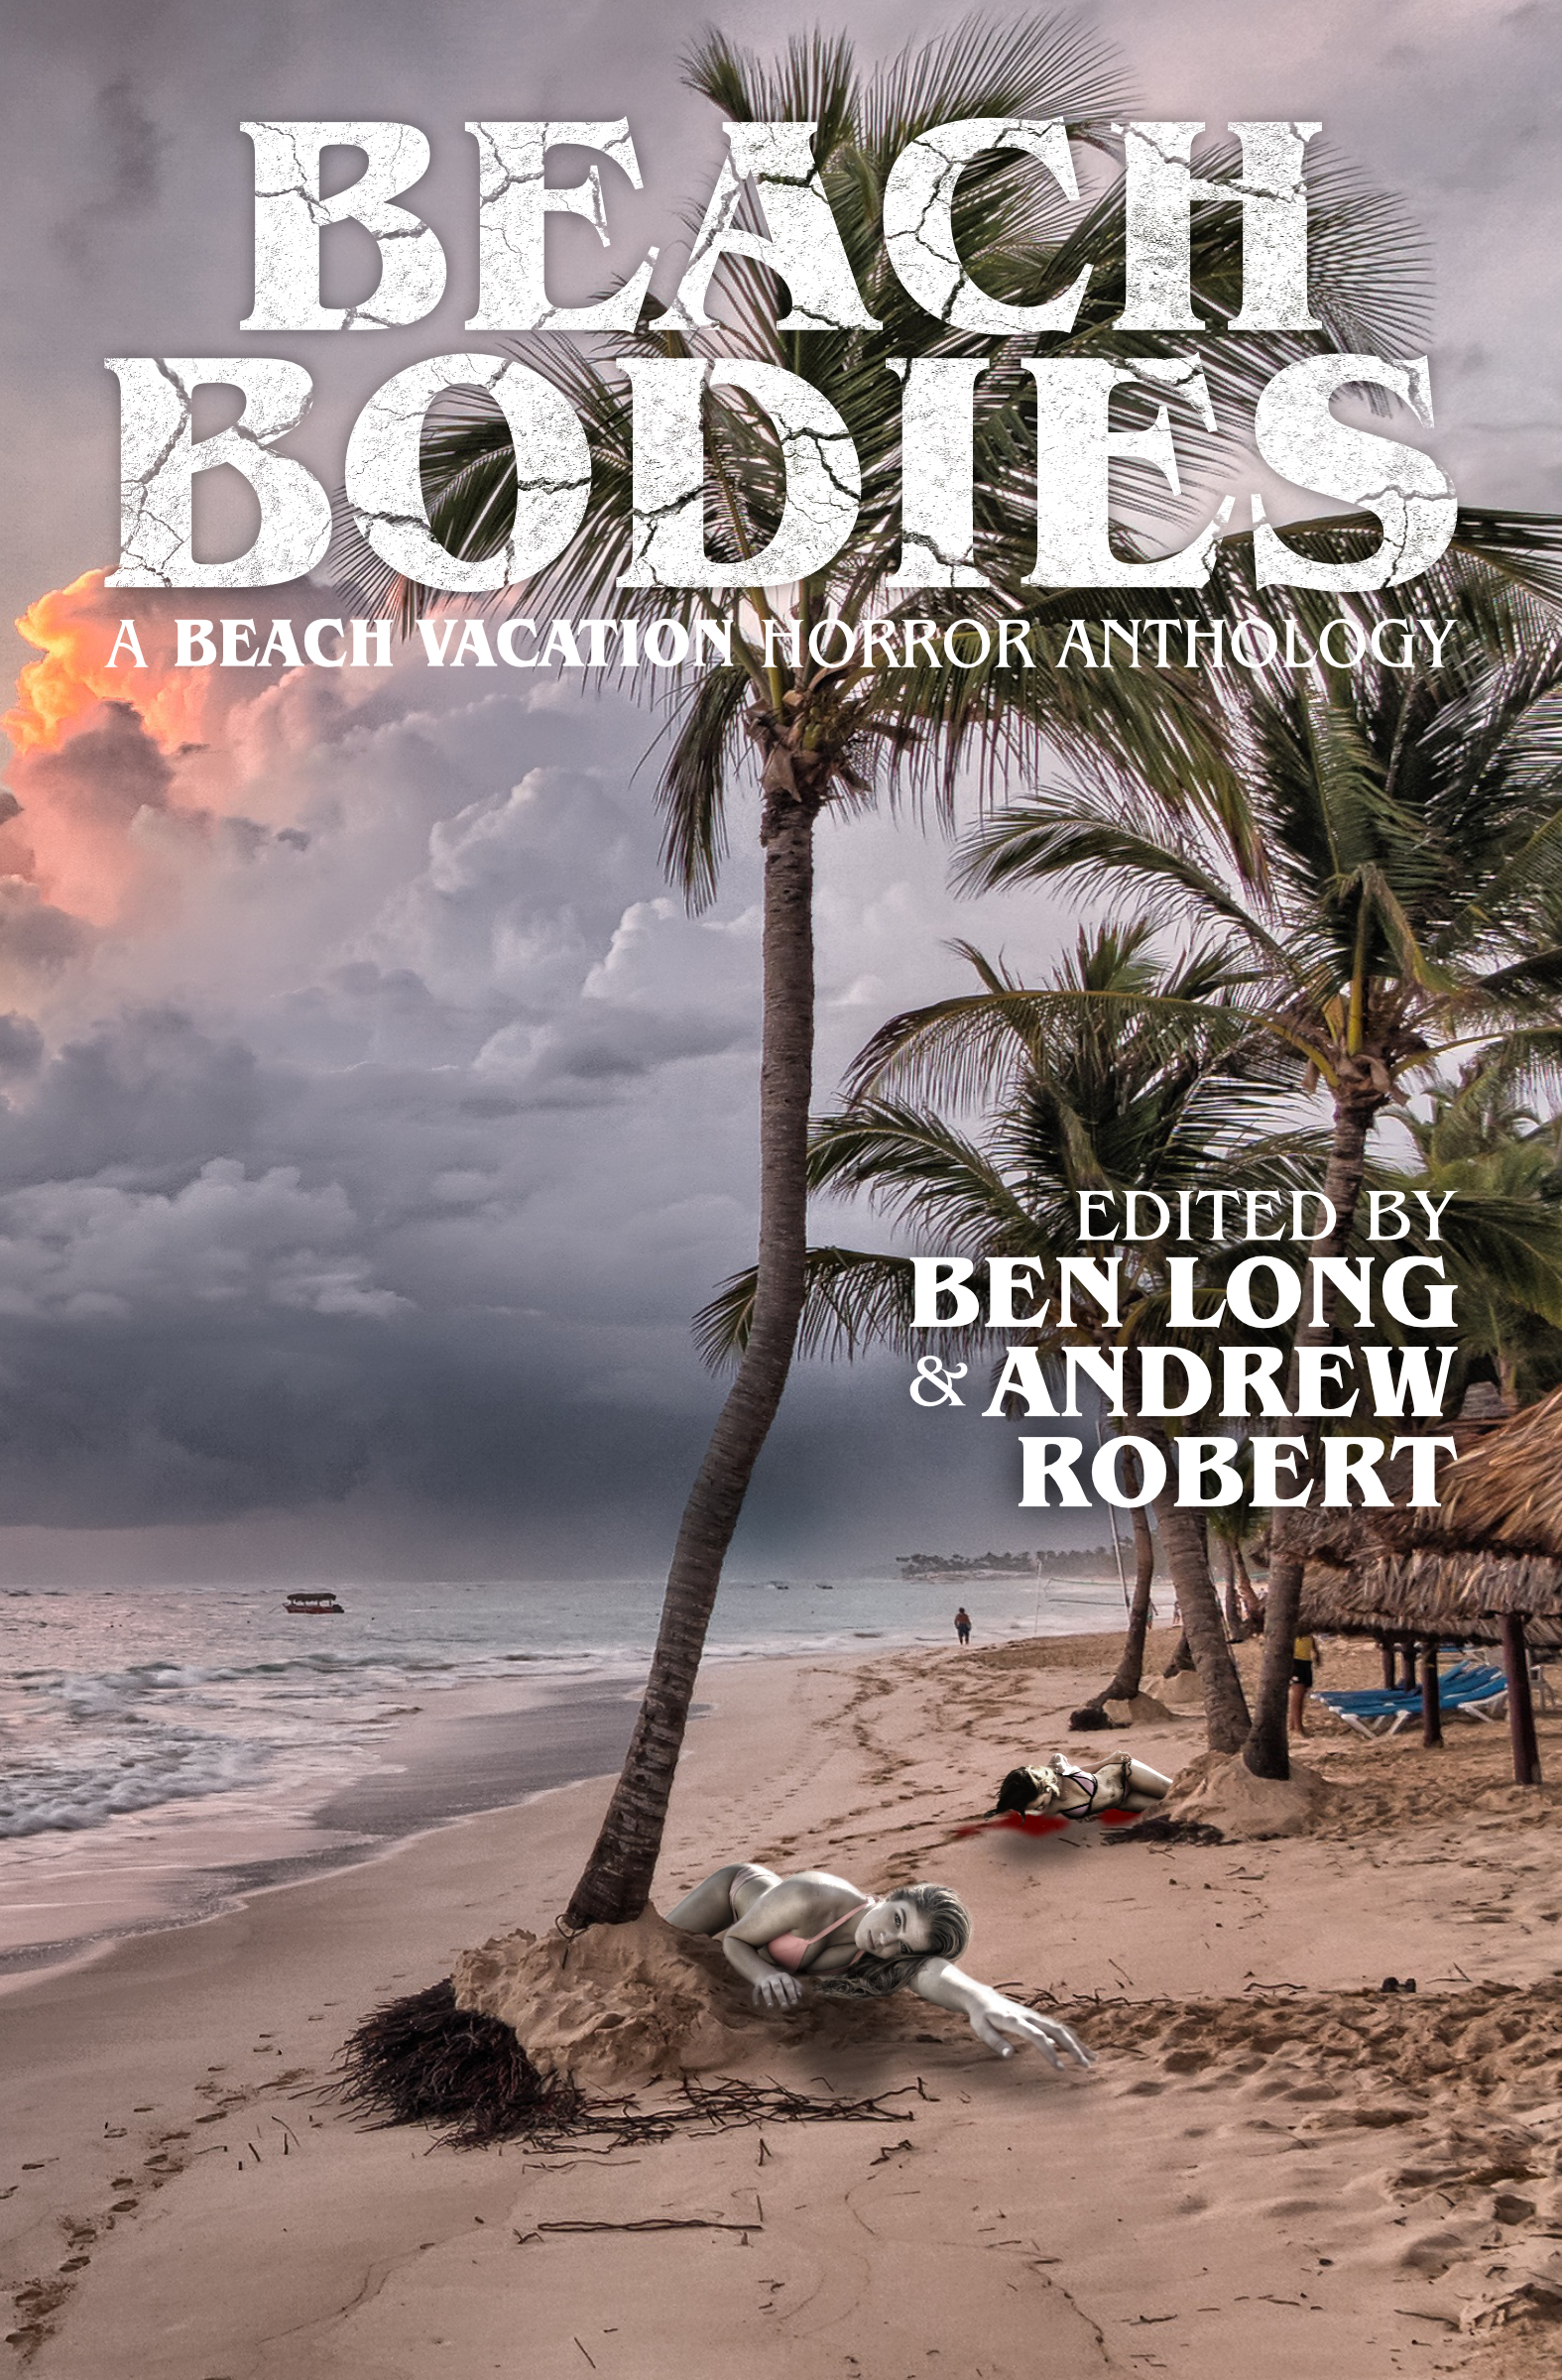 Terror Is A Vacation Destination In DarkLit Press’ Beach Bodies Anthology